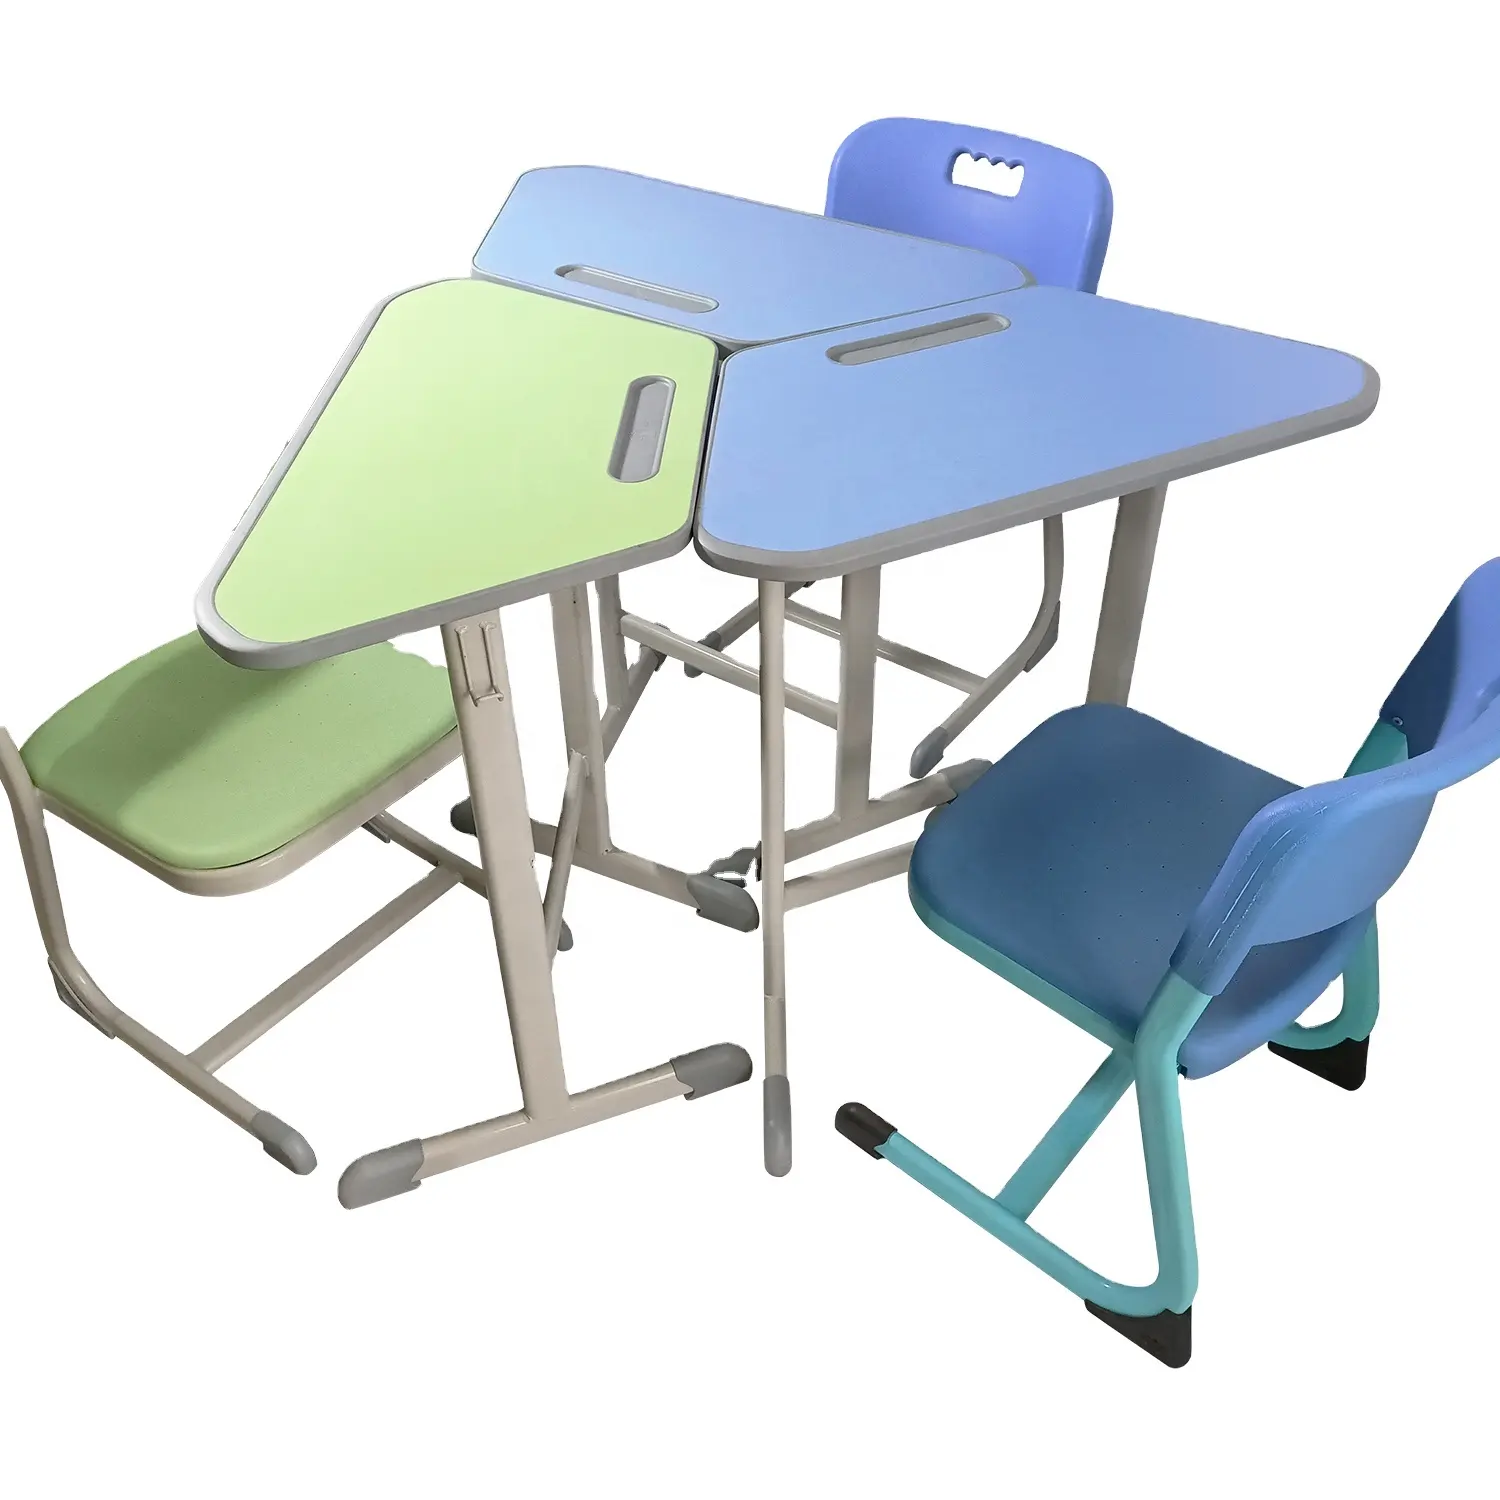 Mobilier scolaire Hexagonal bon marché, bureau fixe et chaise pour enfants, usine de guangzhou